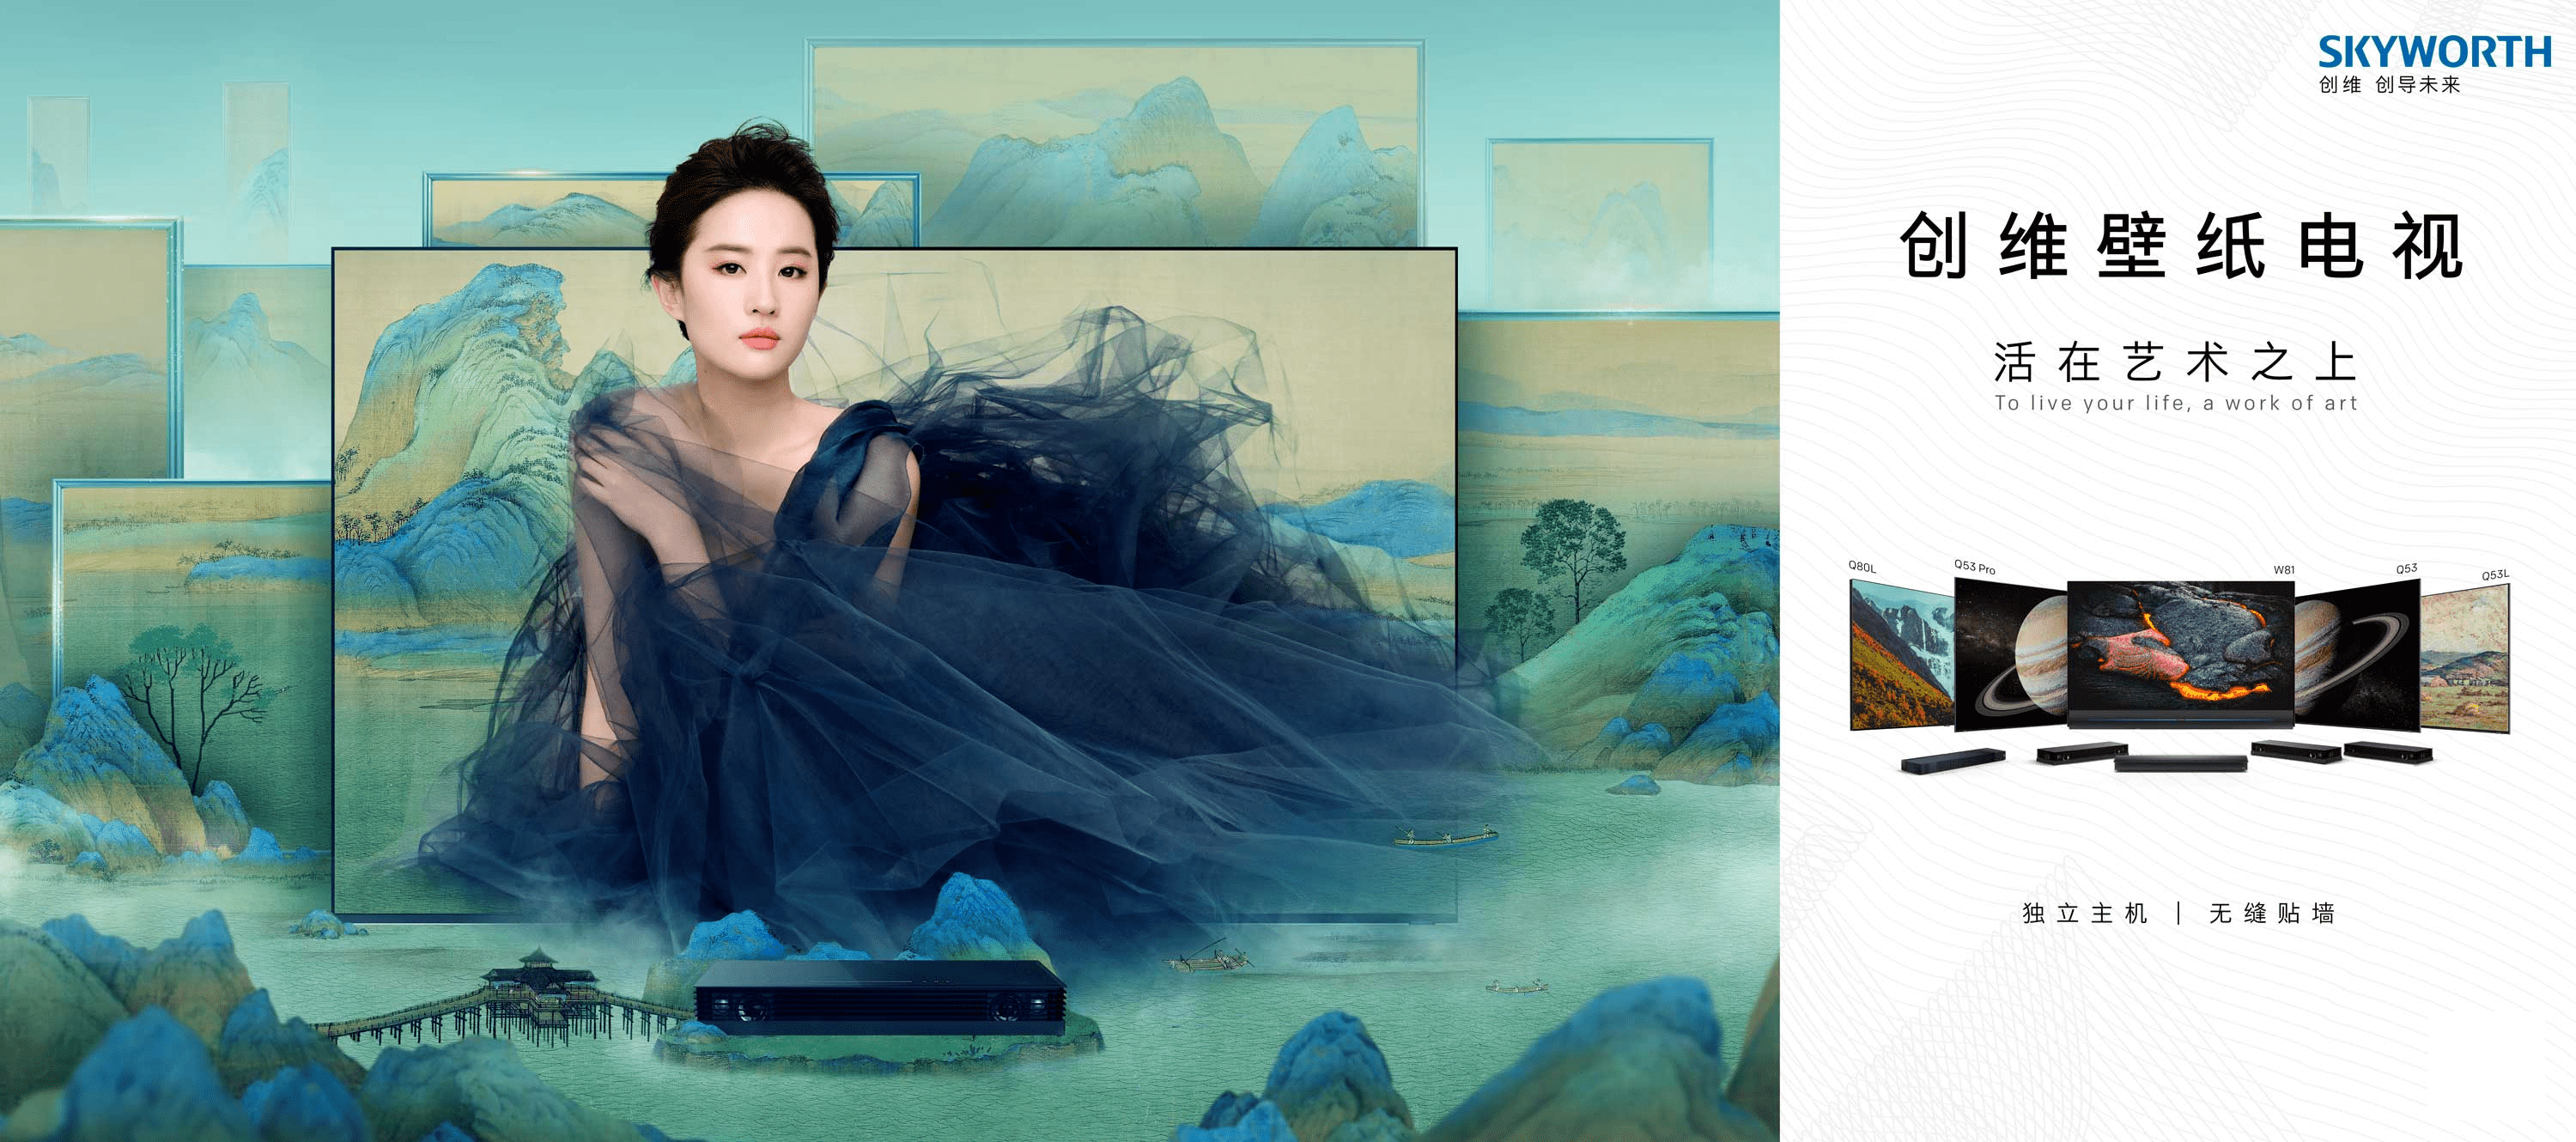 苹果12壁纸超清御姐版:新国风，东方美 创维代言人刘亦菲TVC大片探寻美学意境，活在艺术之上